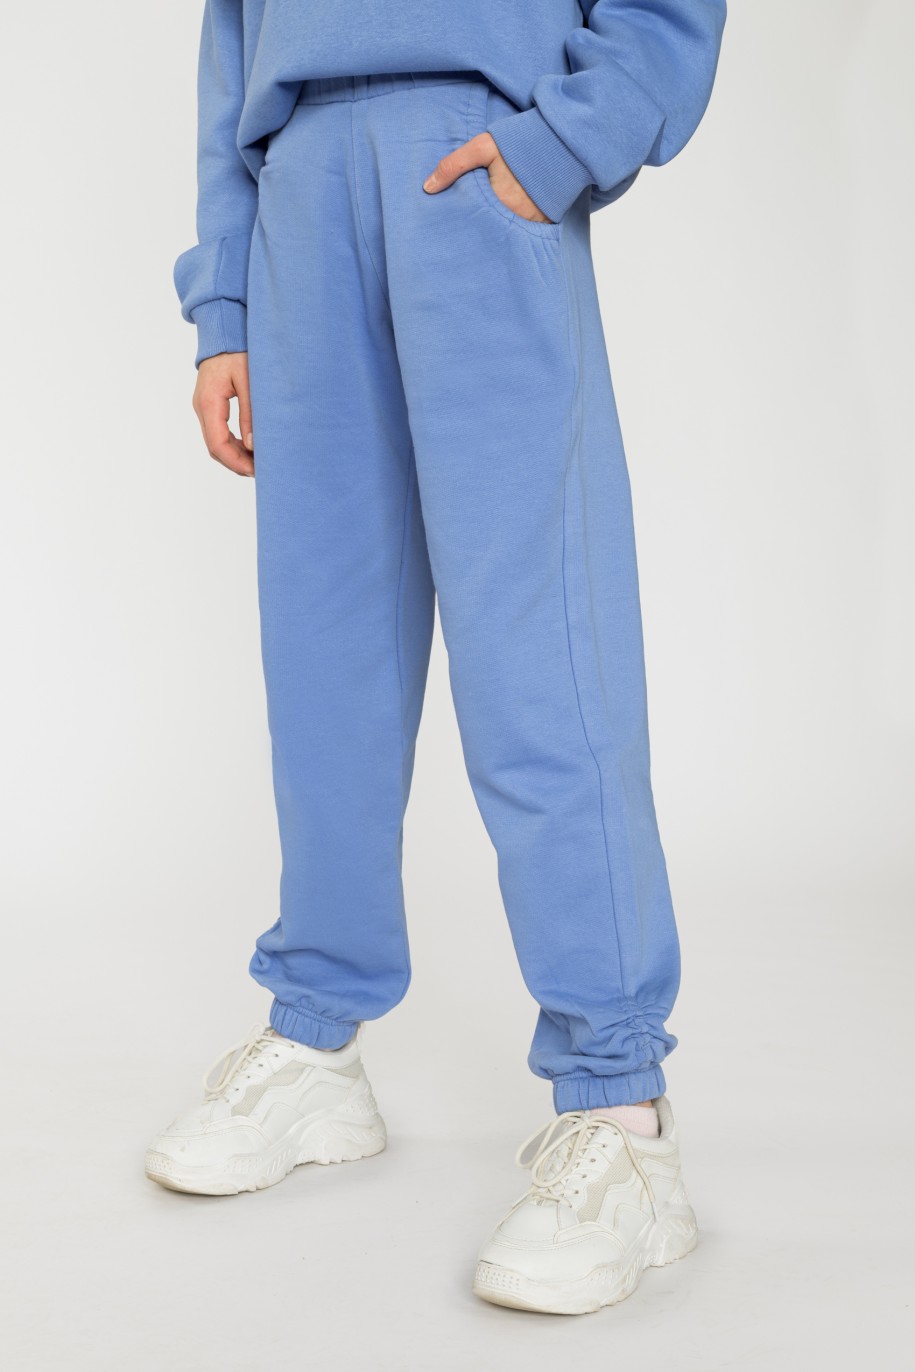 Niebieskie spodnie dresowe dla dziewczyny ze ściągaczami - 31813